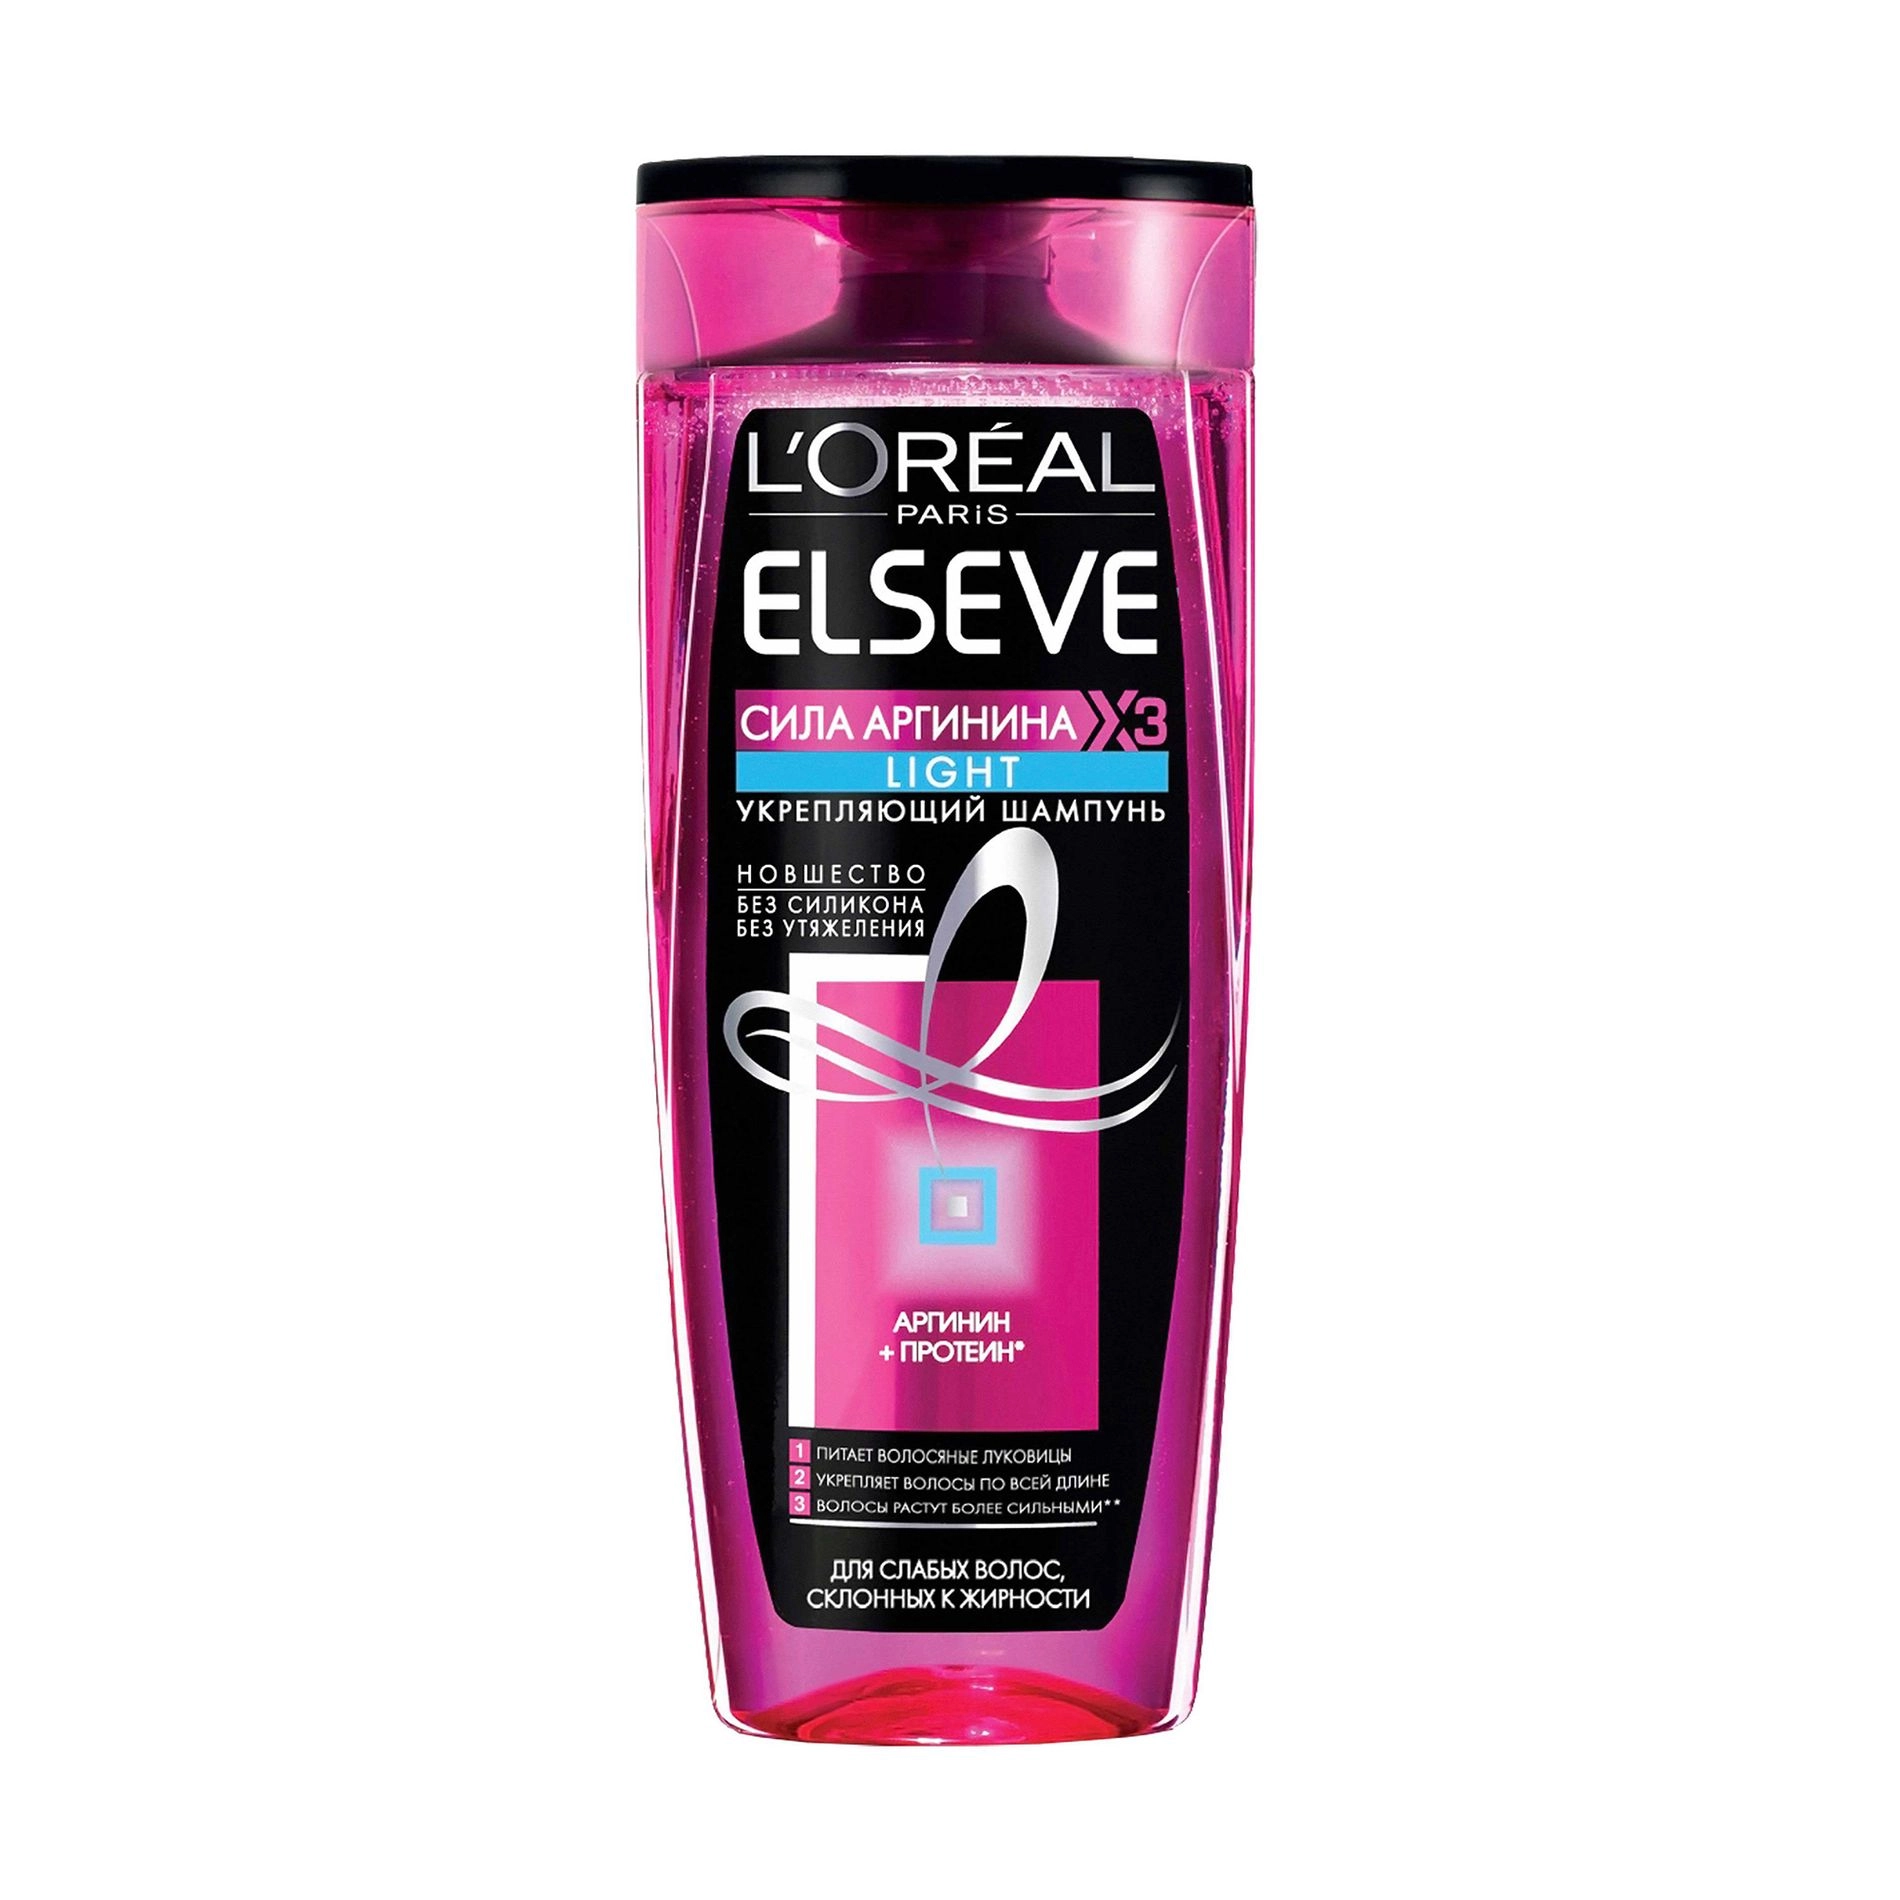 L’Oreal Paris Зміцнювальний шампунь Elseve Сила аргініну Х3 Light для слабкого волосся, схильного до жирності, 250 мл - фото N1